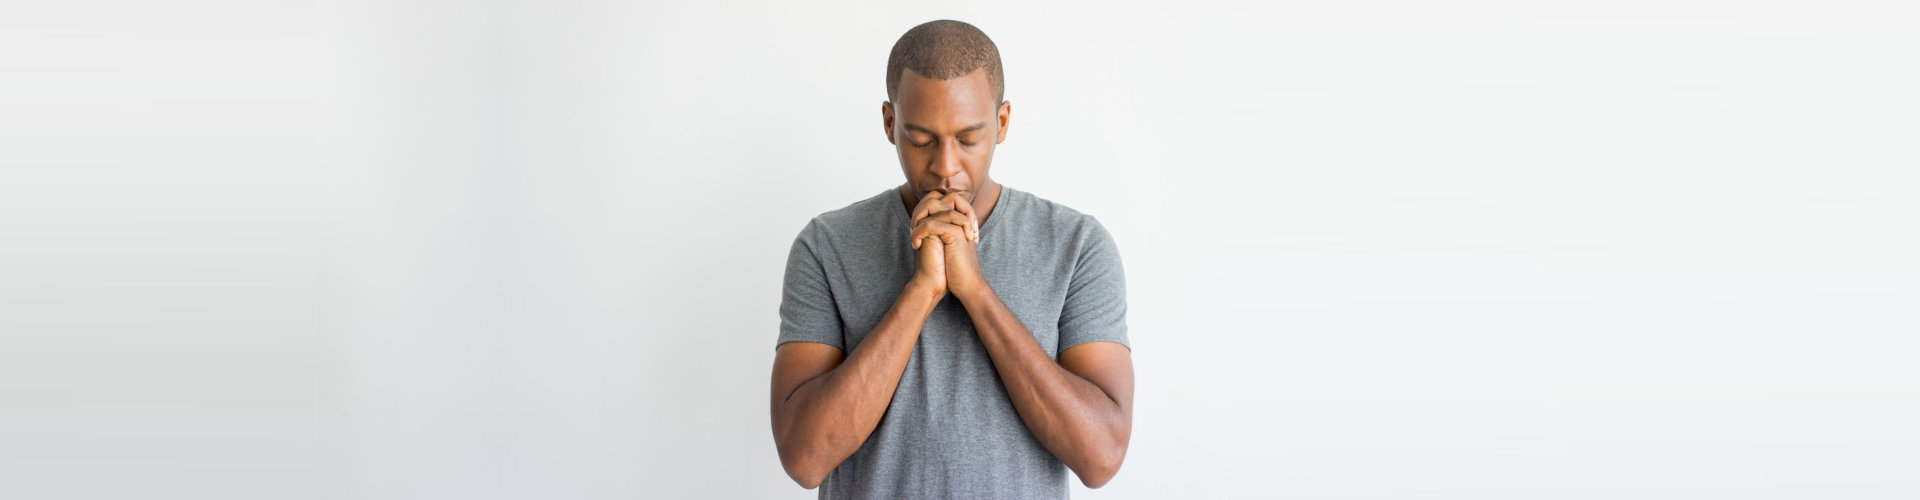 a person praying